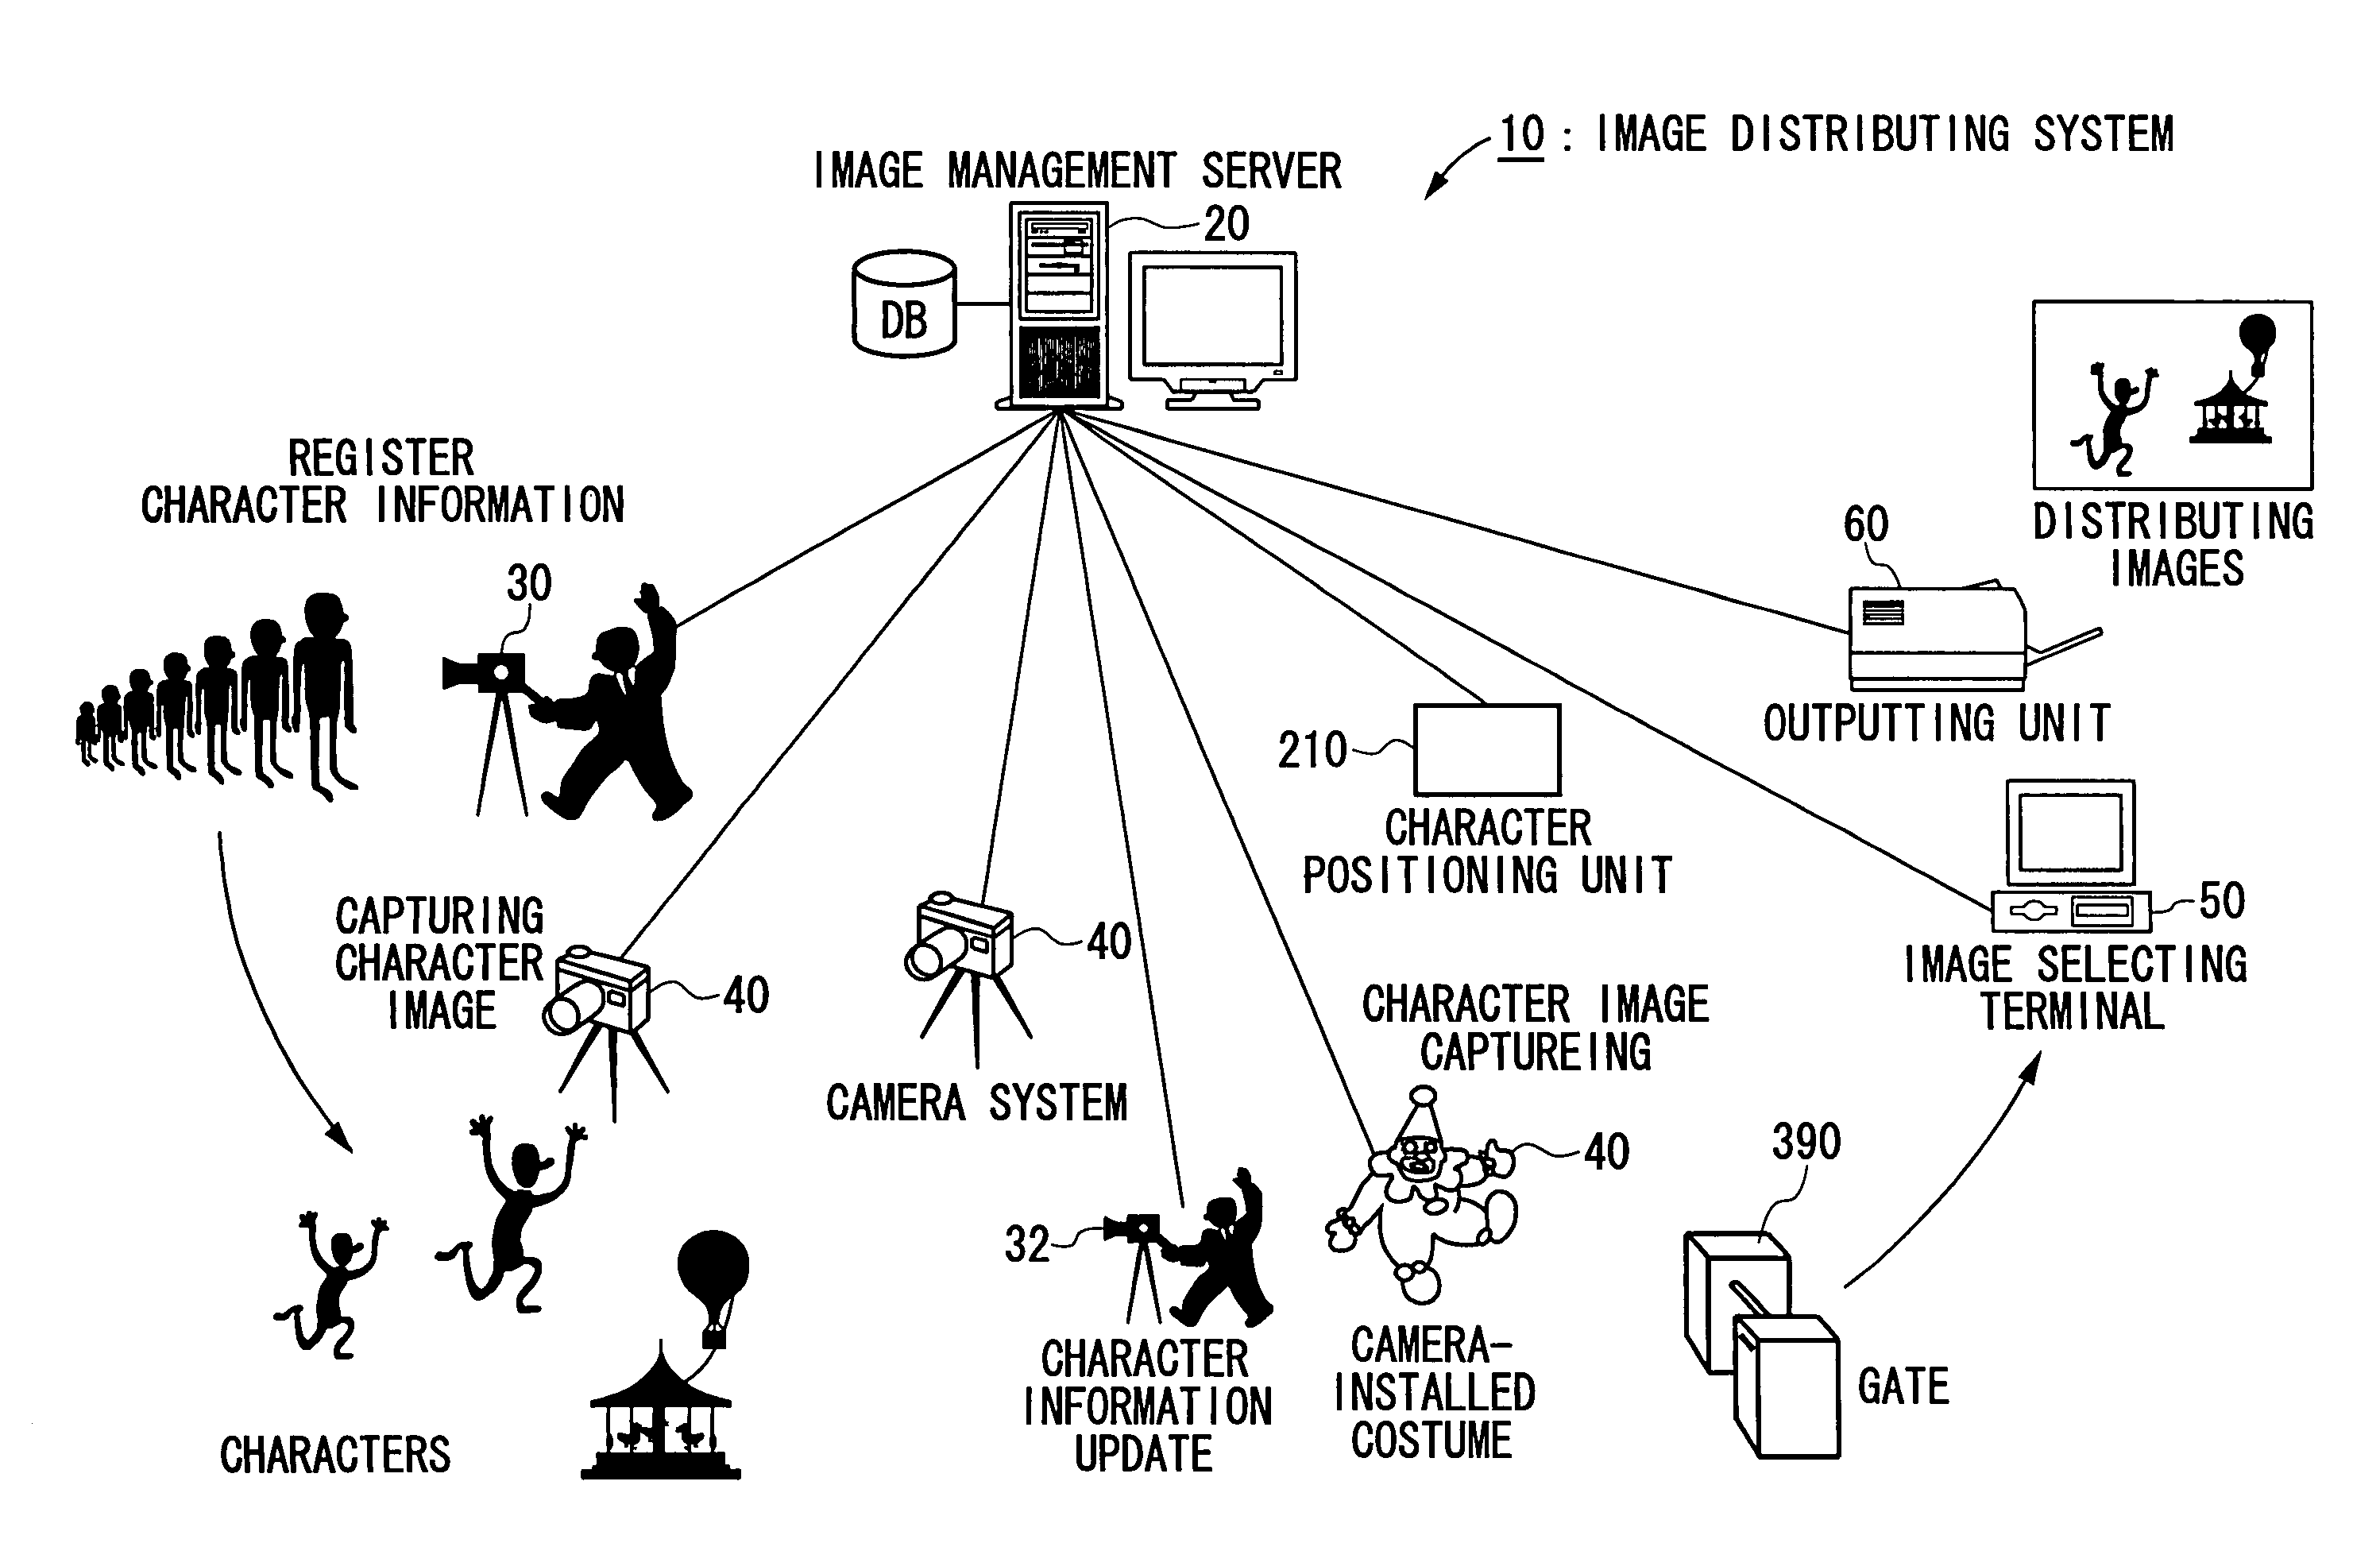 Image distributing system